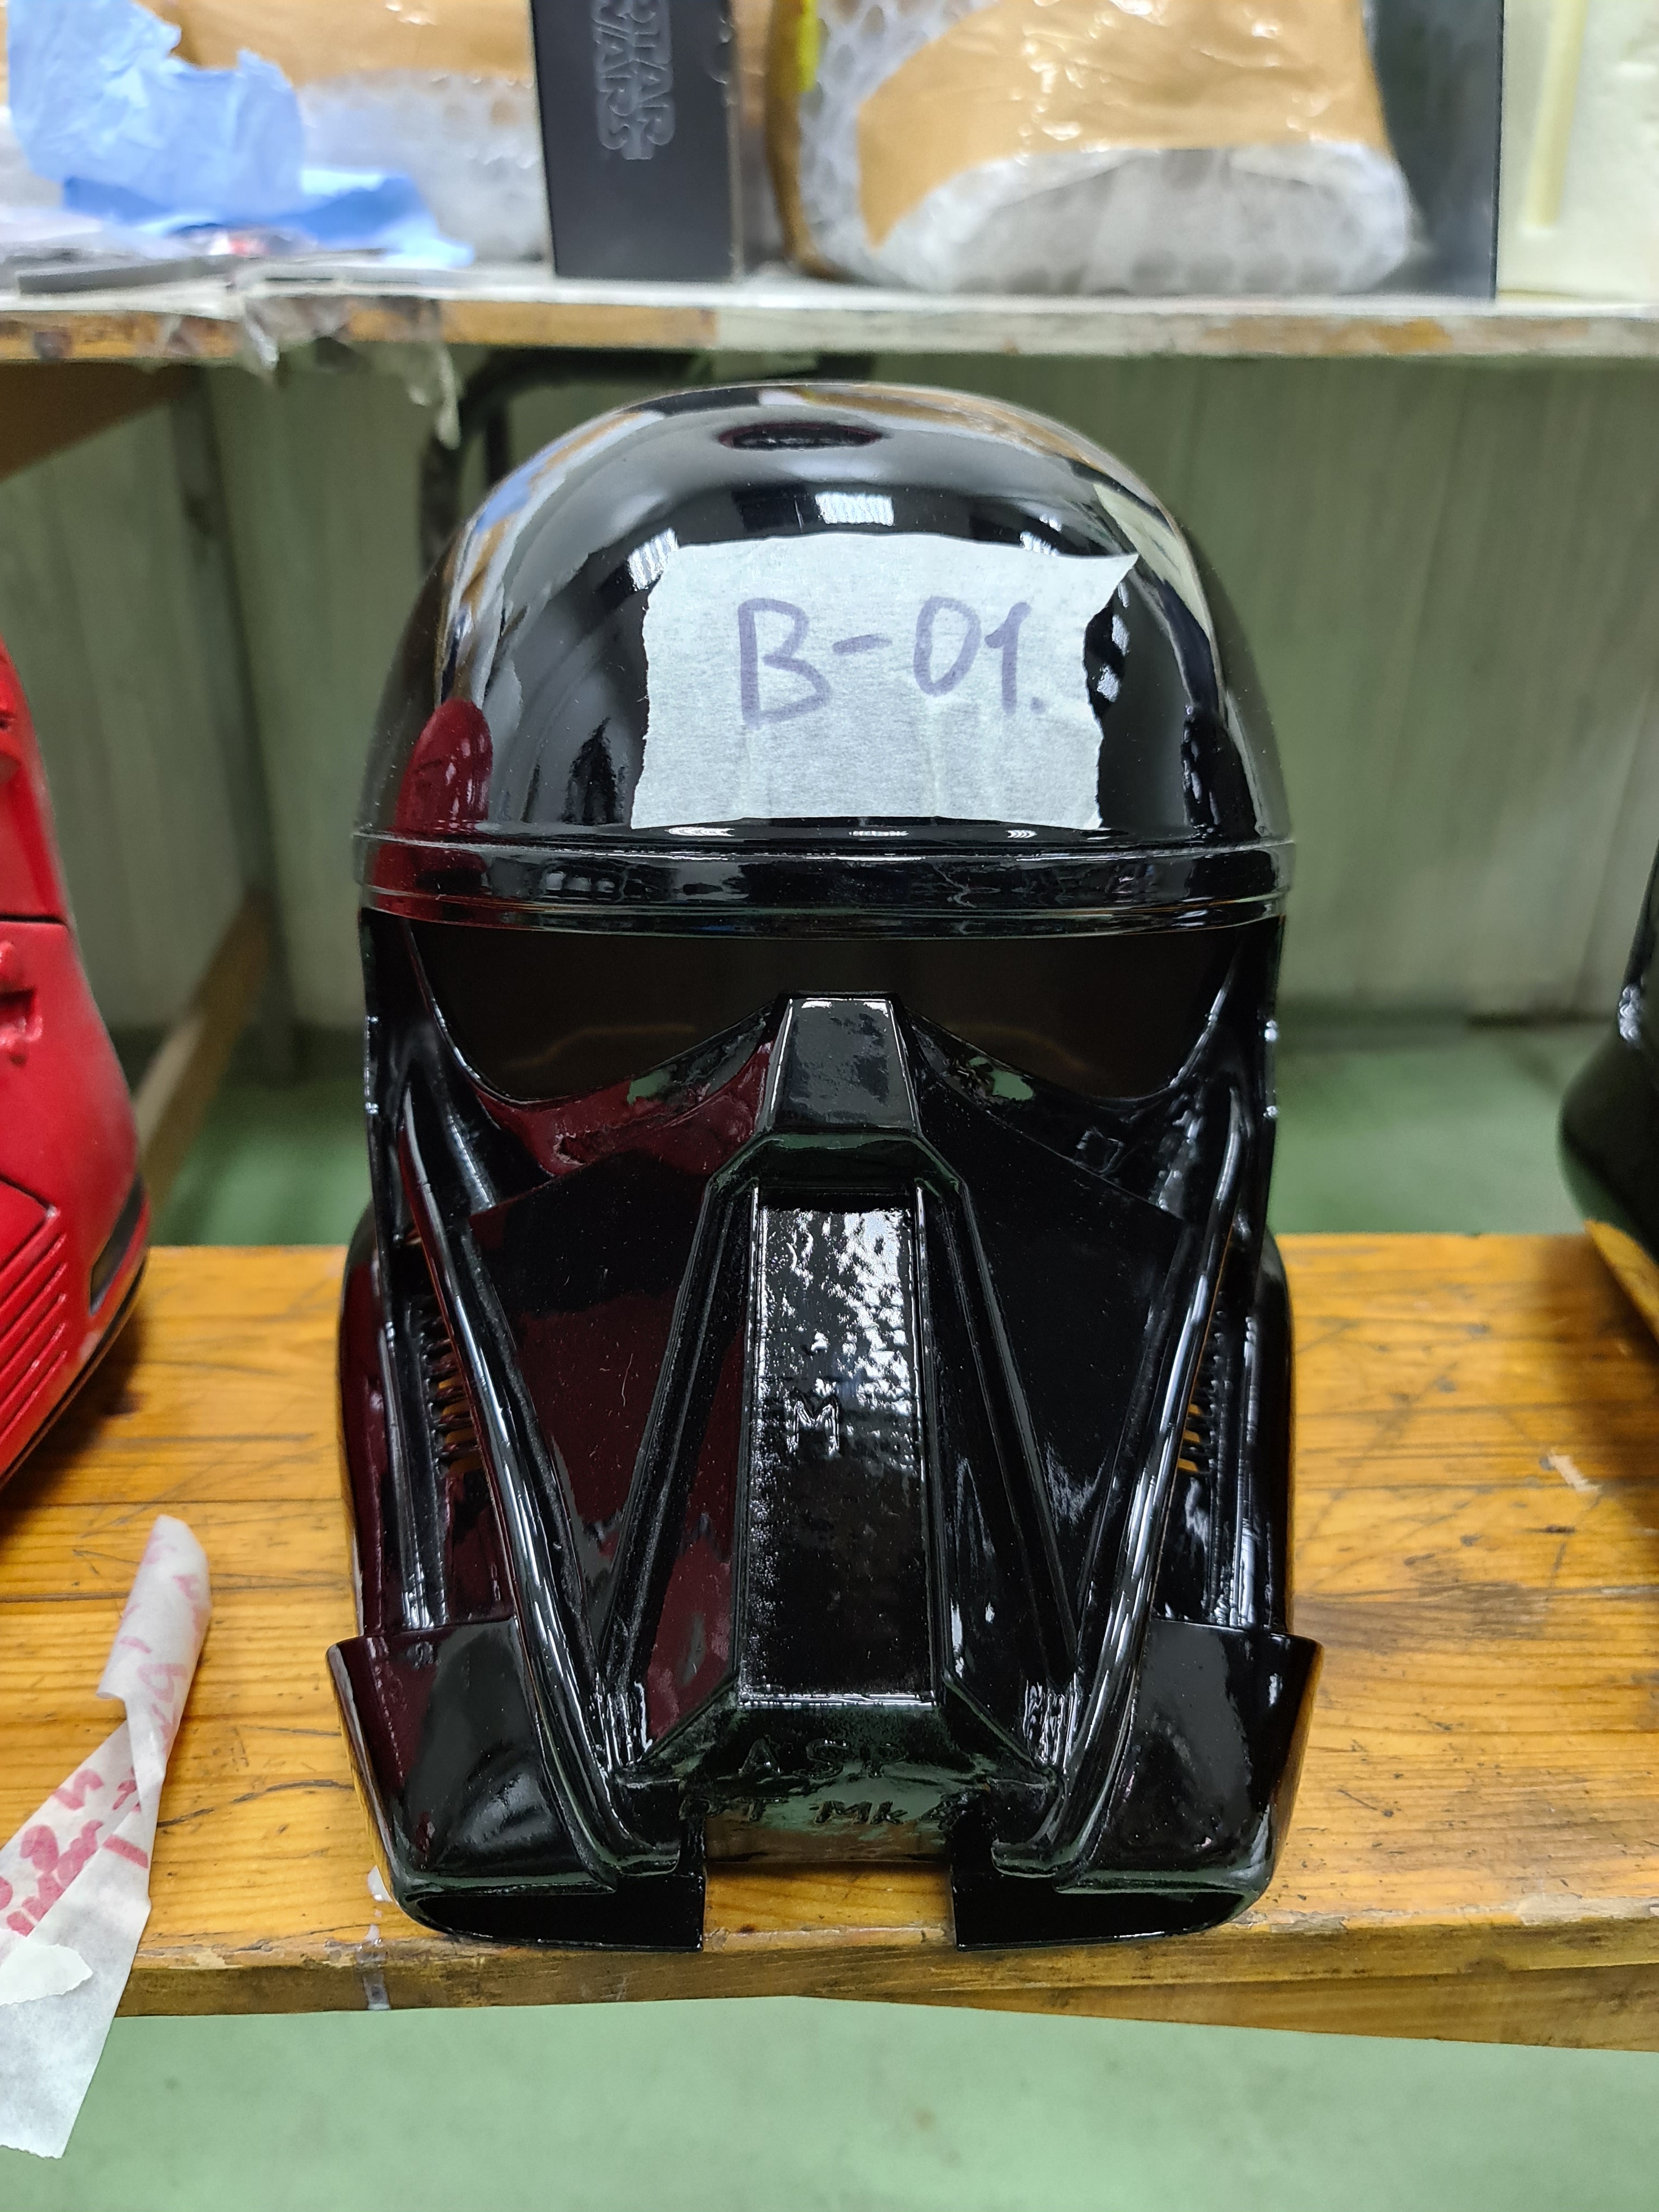 Grade "B" helmet - DeathTrooper #1